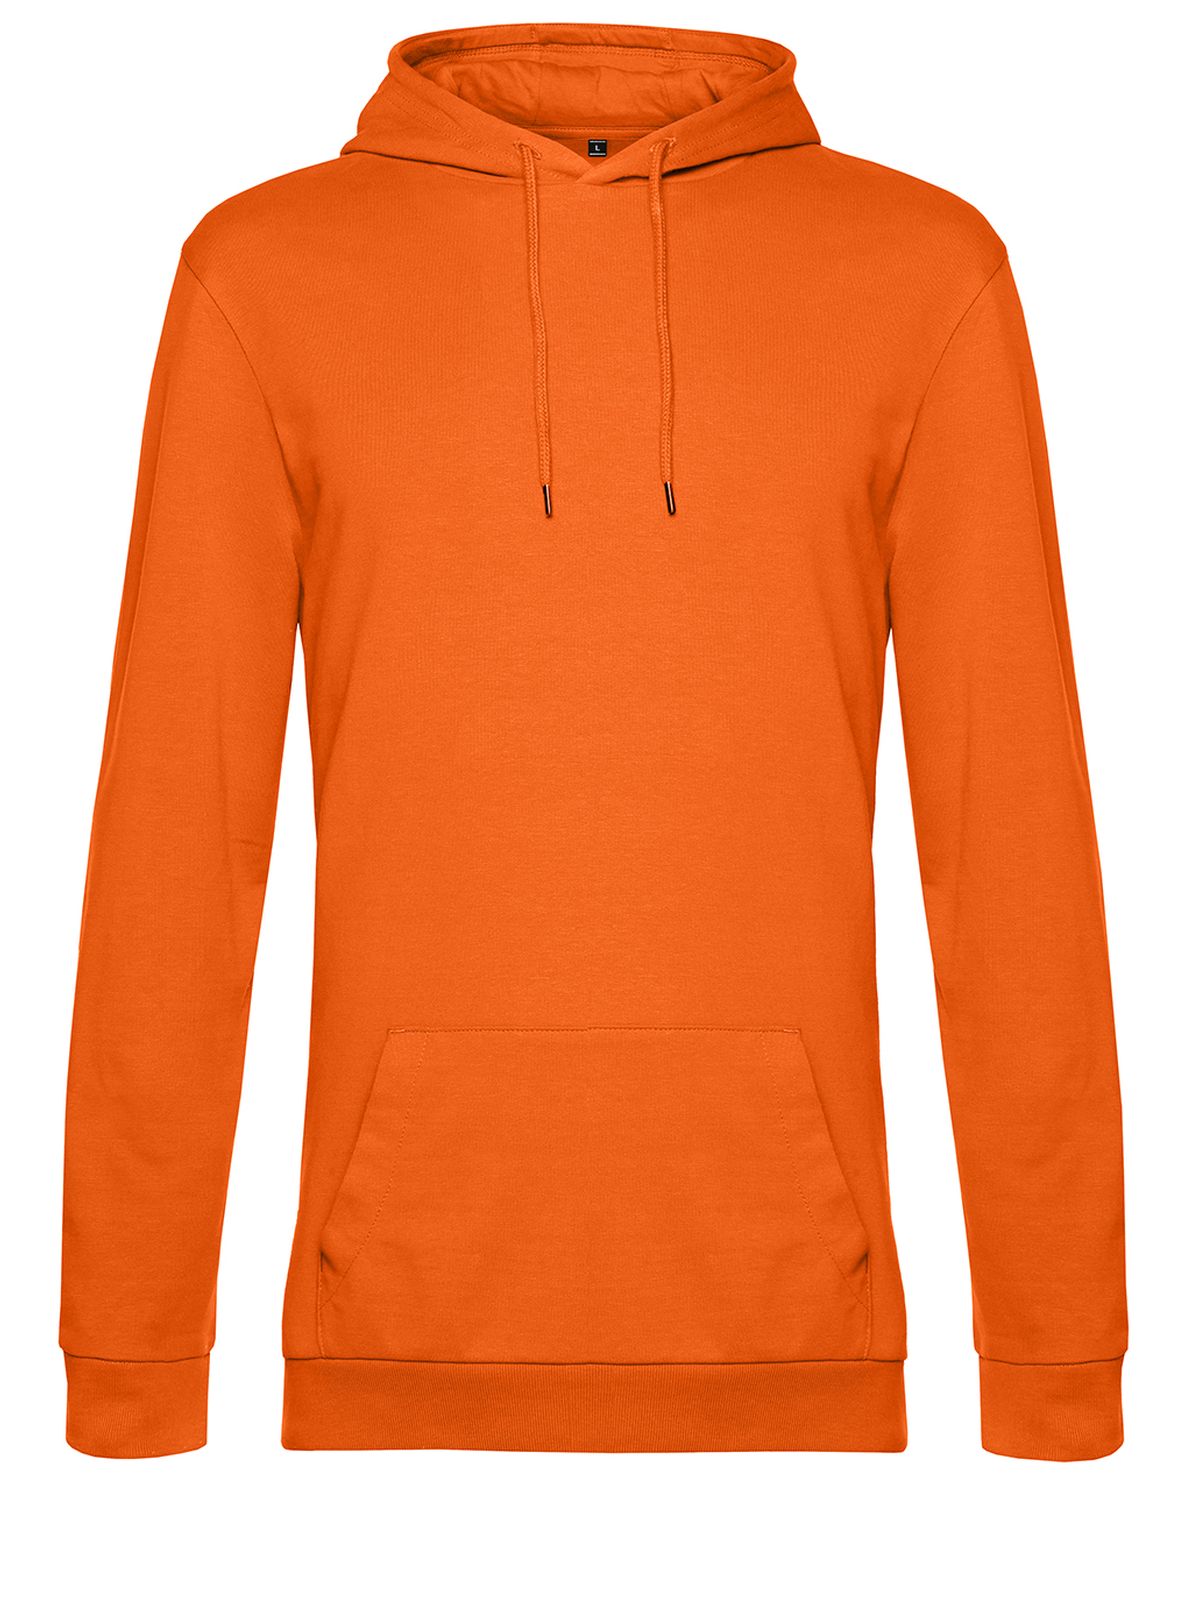 hoodie-pure-orange.webp